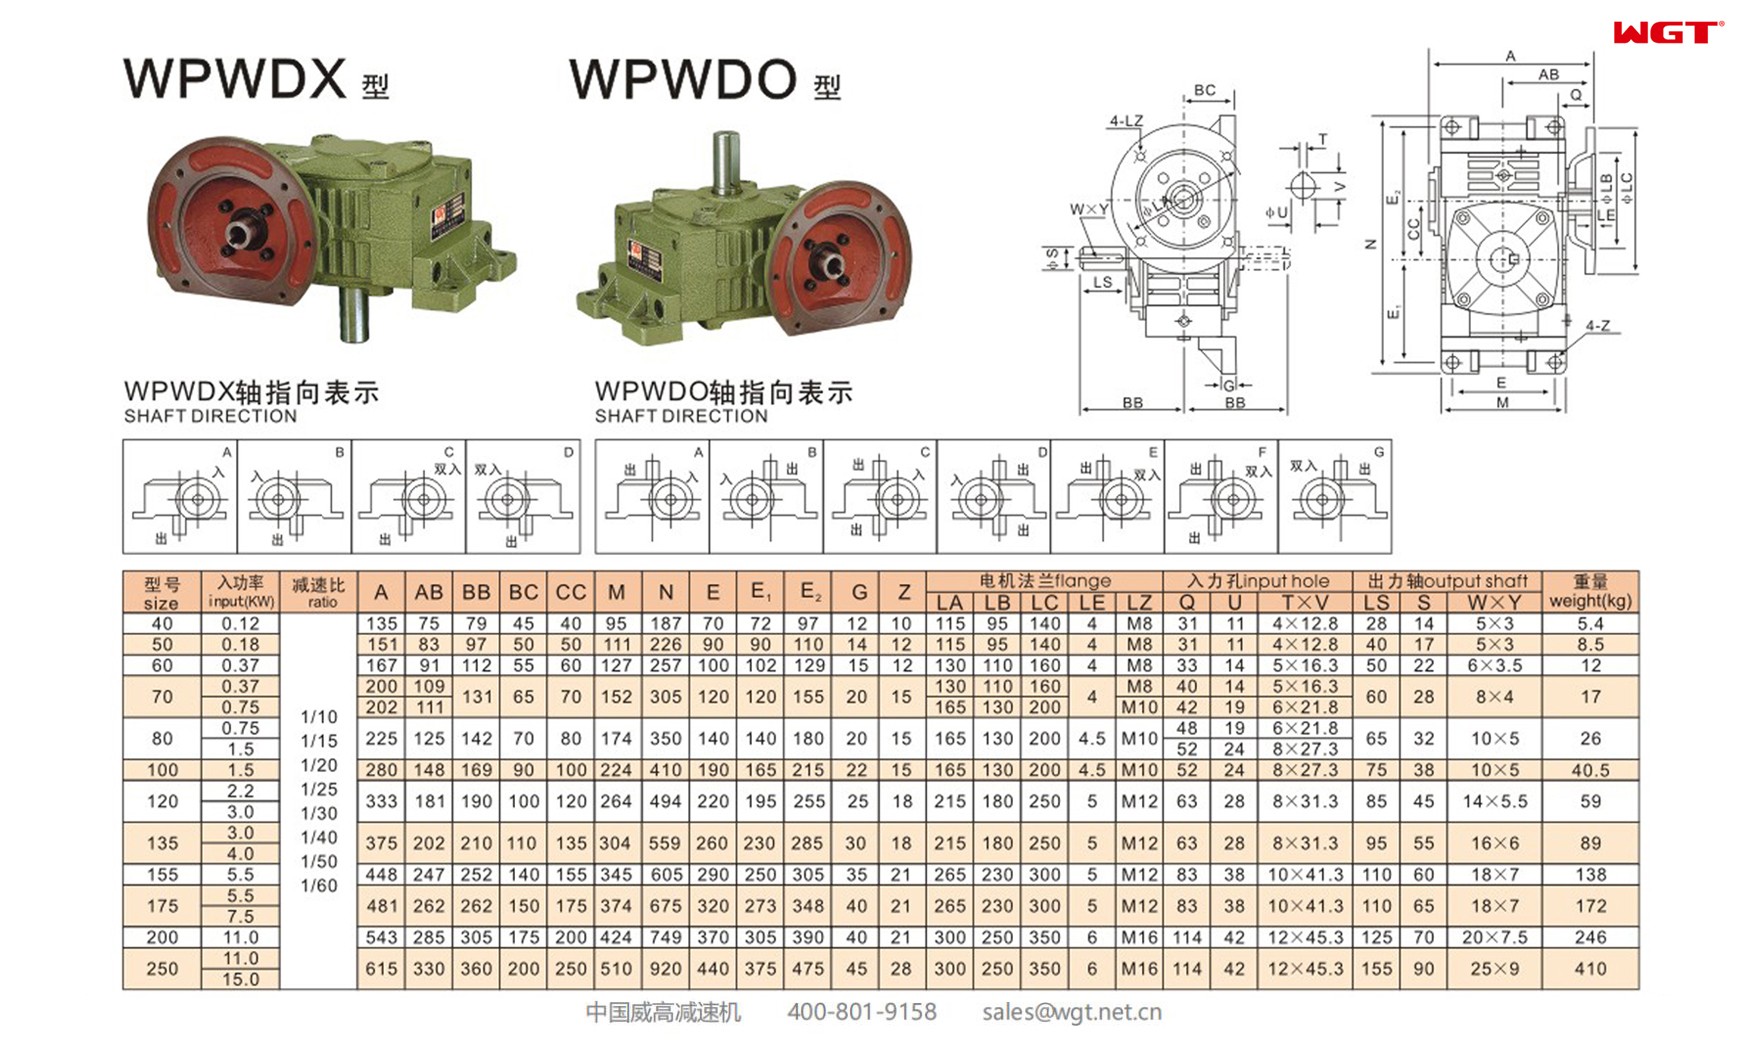 WPWDX250 worm gear reducer universal speed reducer